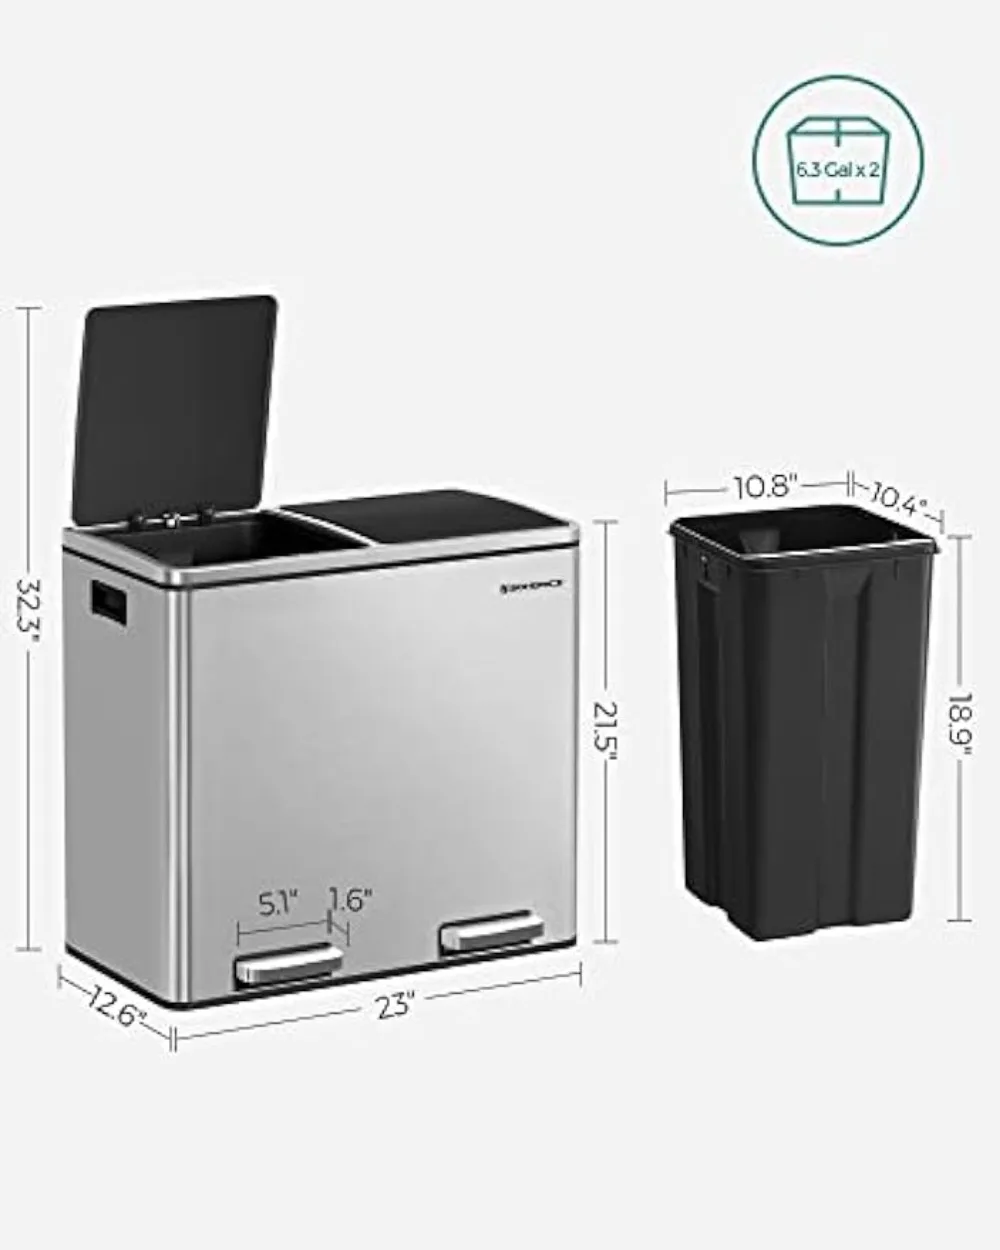  SONGMICS Cubo de basura de cocina, 318 litros, cubo con 3  compartimentos, cubos interiores y 6 adhesivos para separación de residuos,  sistema de separación de residuos, color negro, LTB54B, 23.8 x